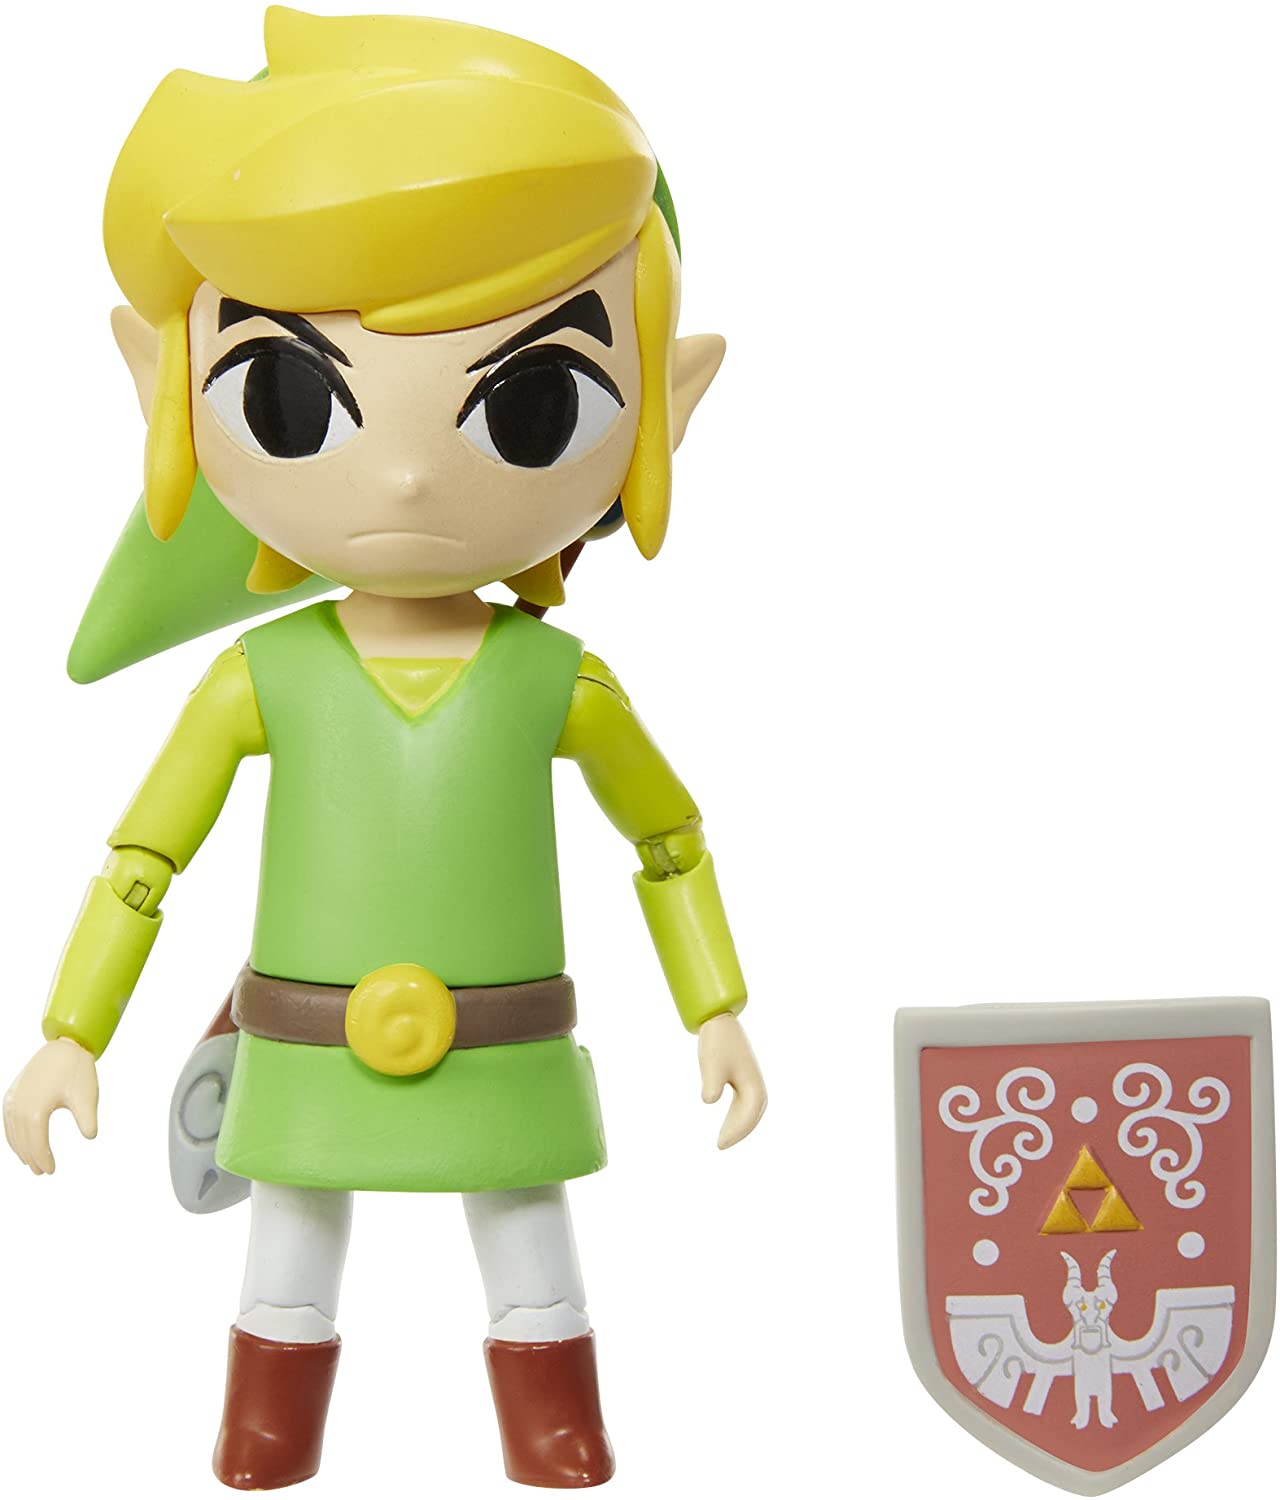 Legend Of Zelda Toys